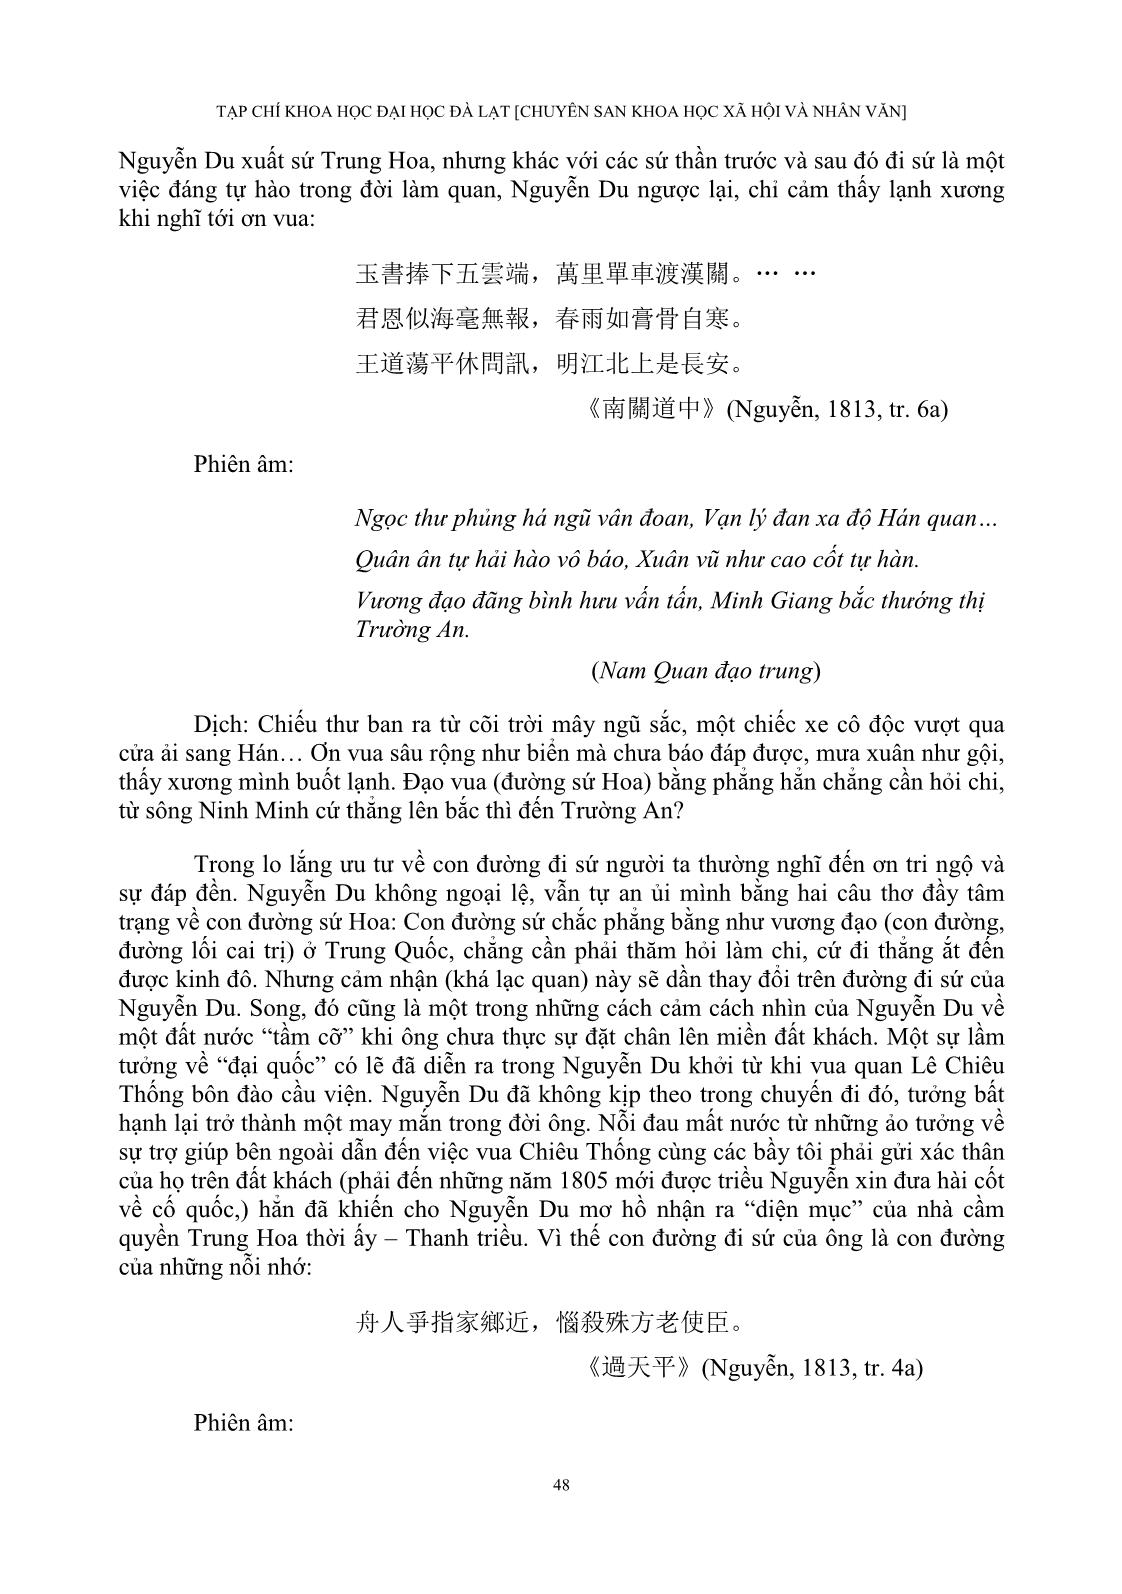 Cảm thức của Nguyễn Du về Trung Quốc Thanh triều trong “Bắc hành tạp lục” trang 6